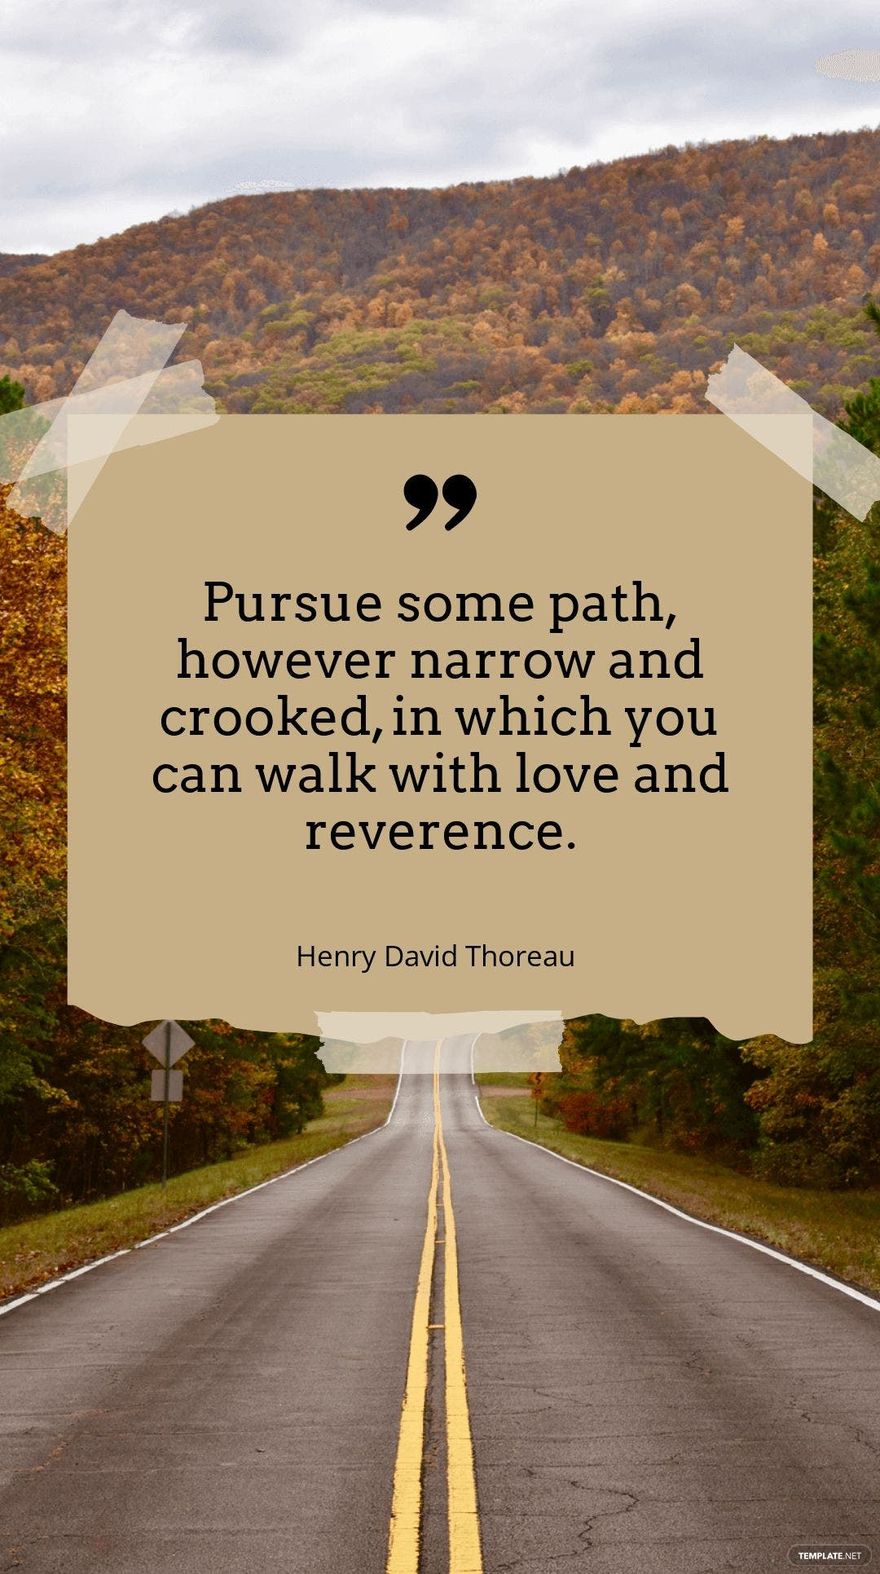 Henry David Thoreau - 